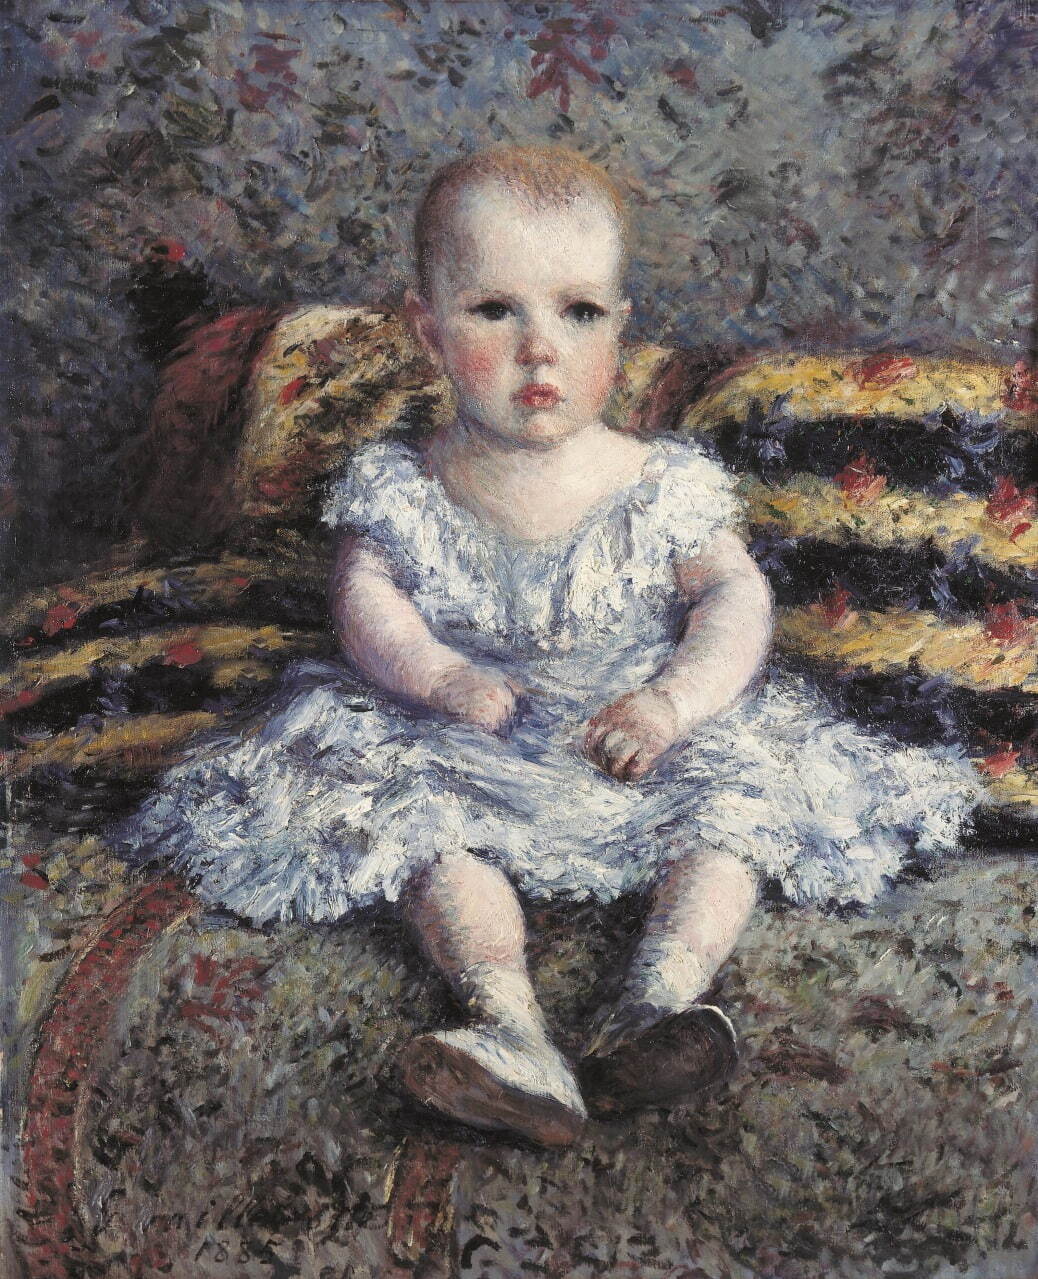 ギュスターヴ・カイユボット《子どものモーリス・ユゴーの肖像》1885年、油彩・カンヴァス
ASSOCIATION DES AMIS DU PETIT PALAIS, GENEVE